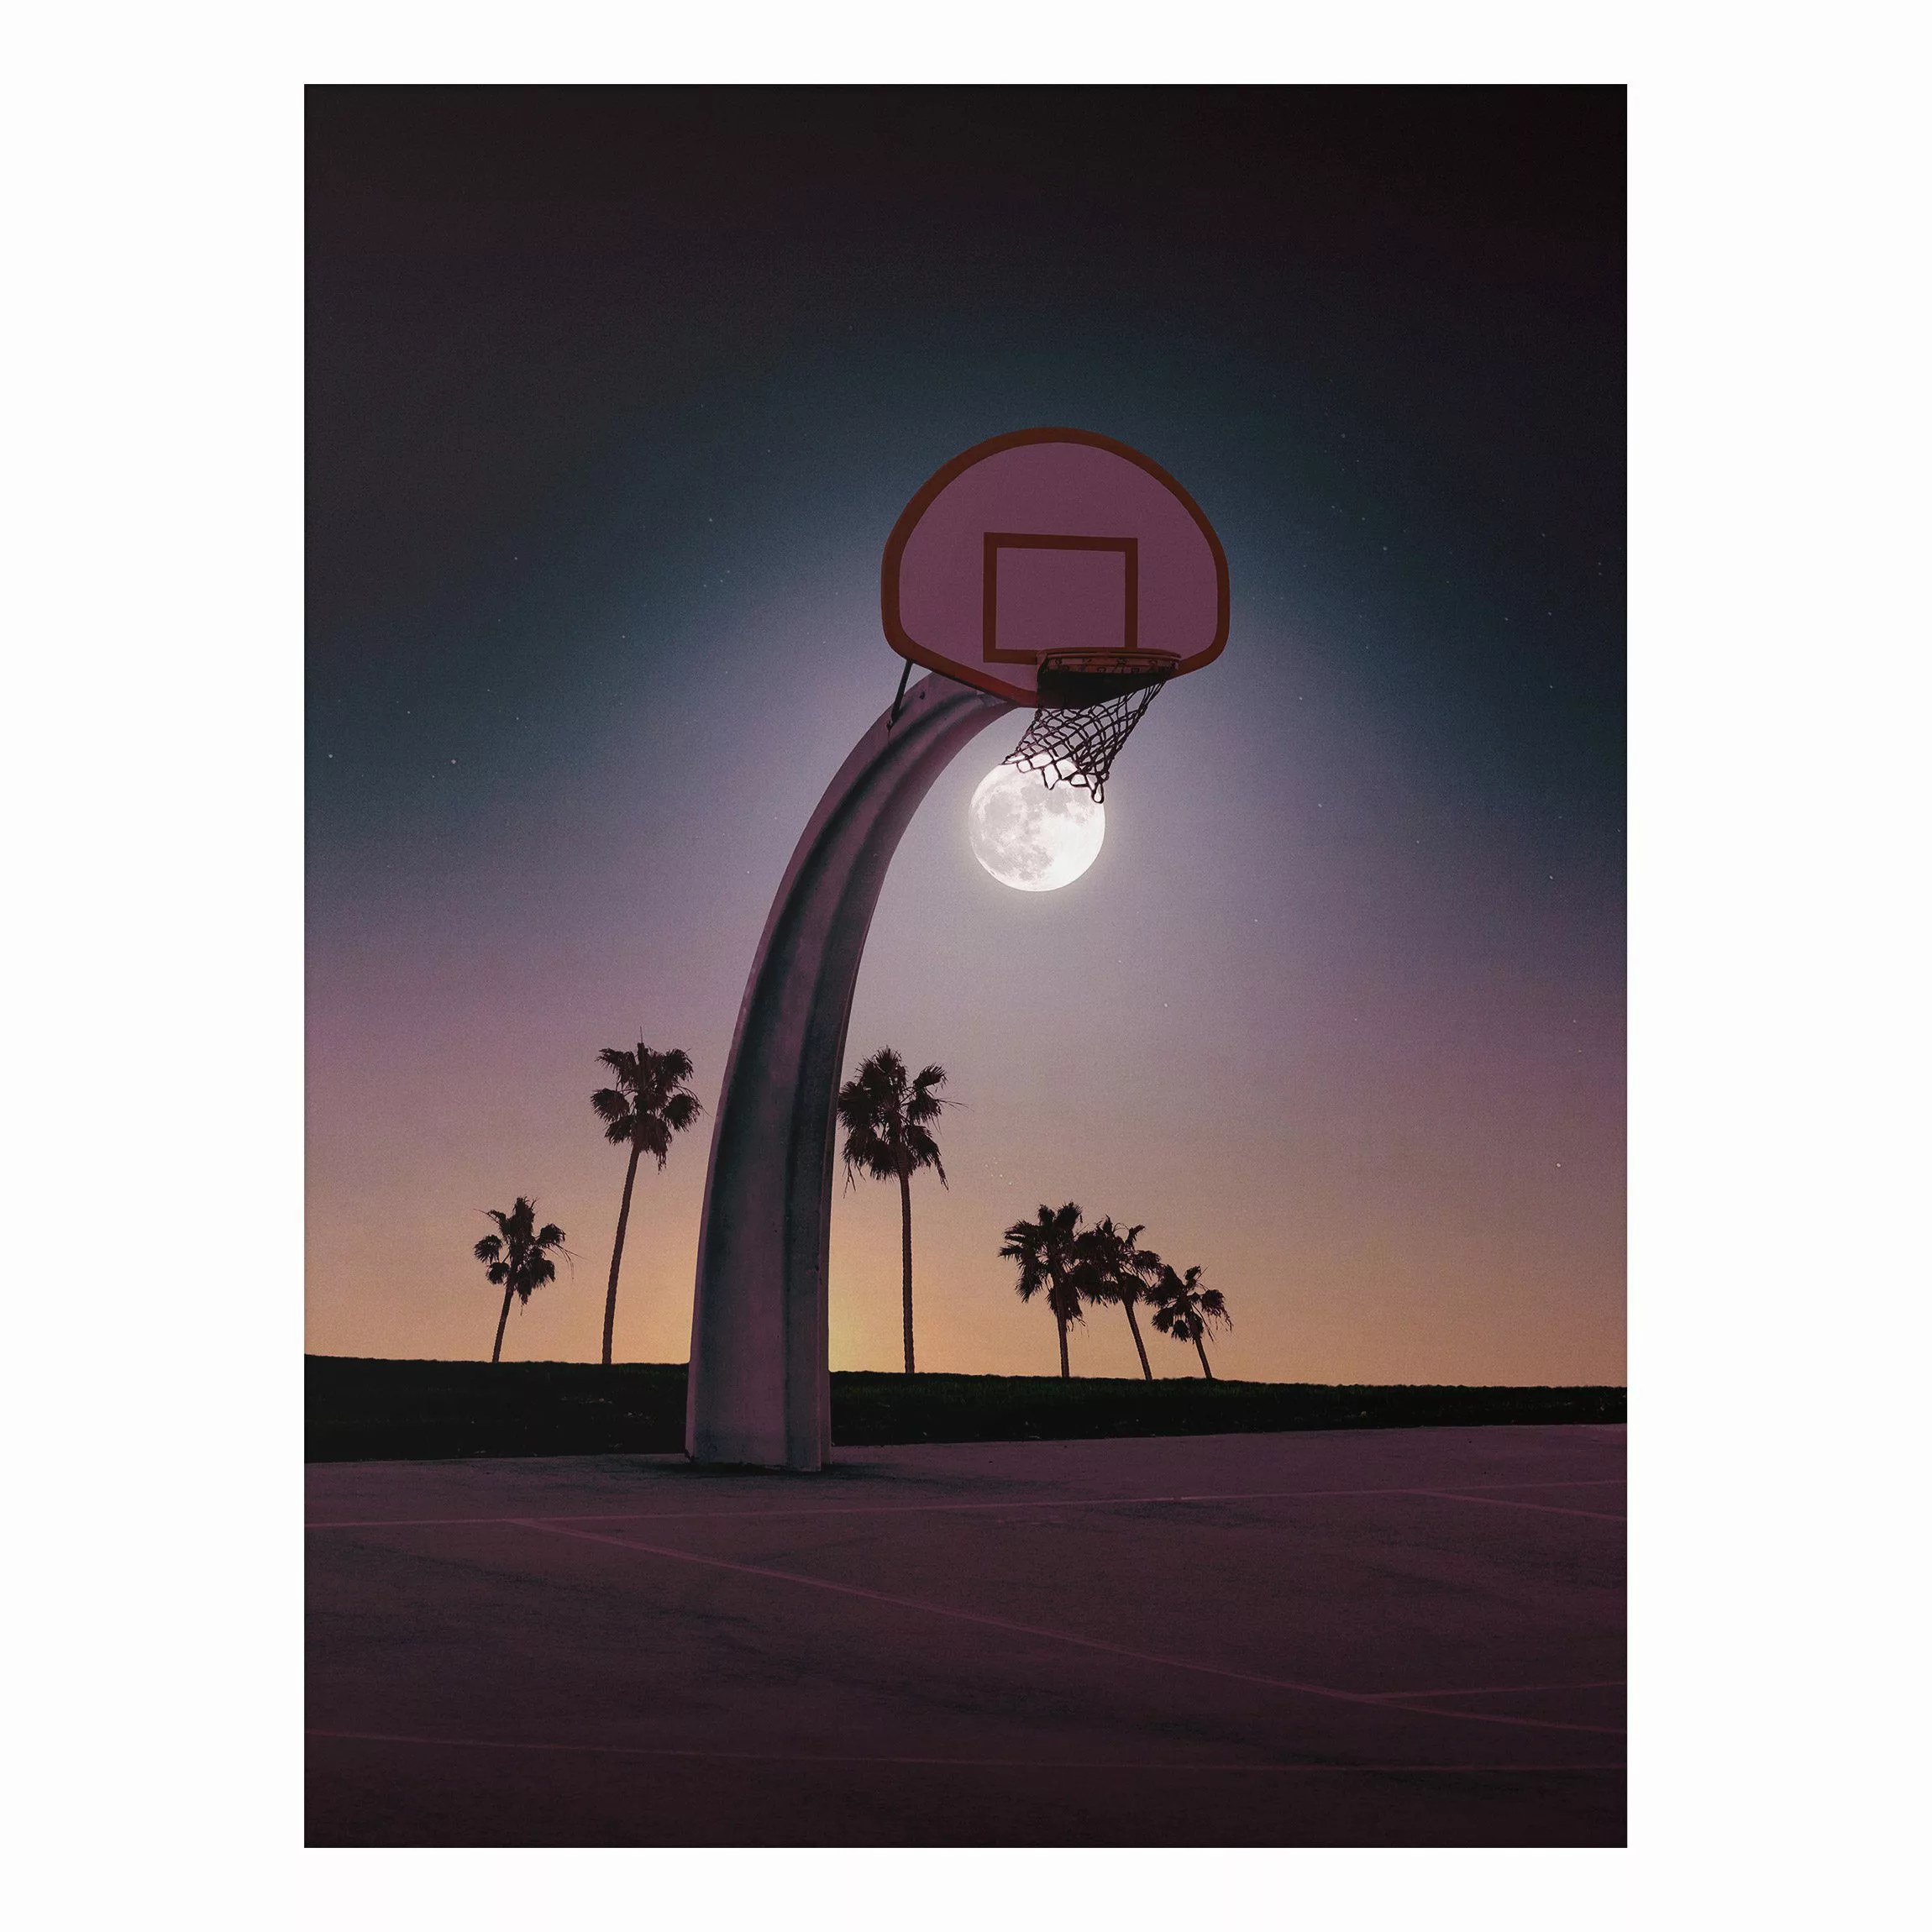 Alu-Dibond Bild Kunstdruck - Hochformat 3:4 Basketball mit Mond günstig online kaufen